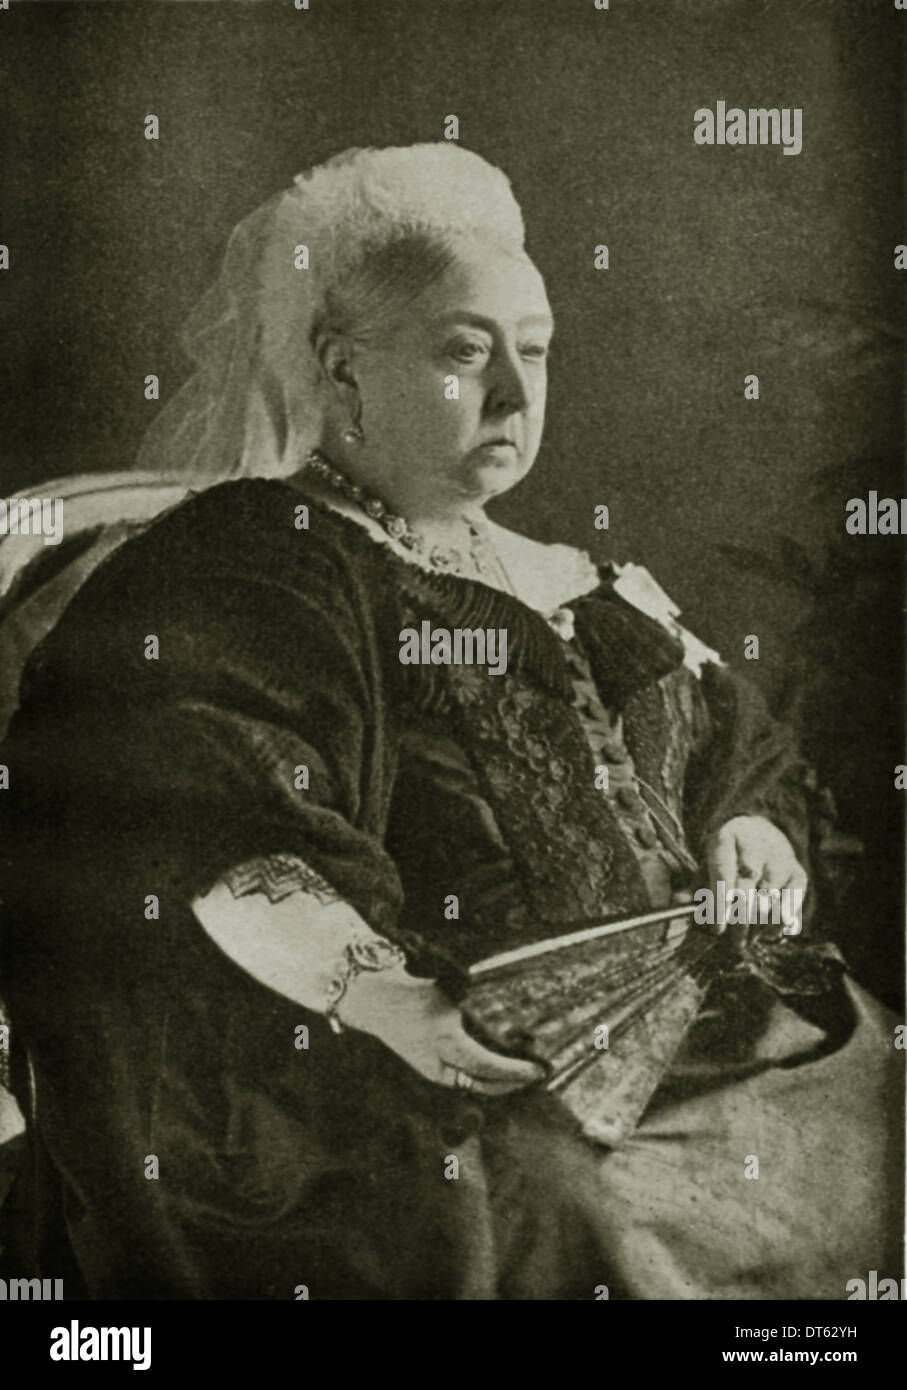 La regina Victoria un ritratto nel 1897. Immagine da archivio di stampa Ritratto Service (ex premere ritratto Bureau) Foto Stock